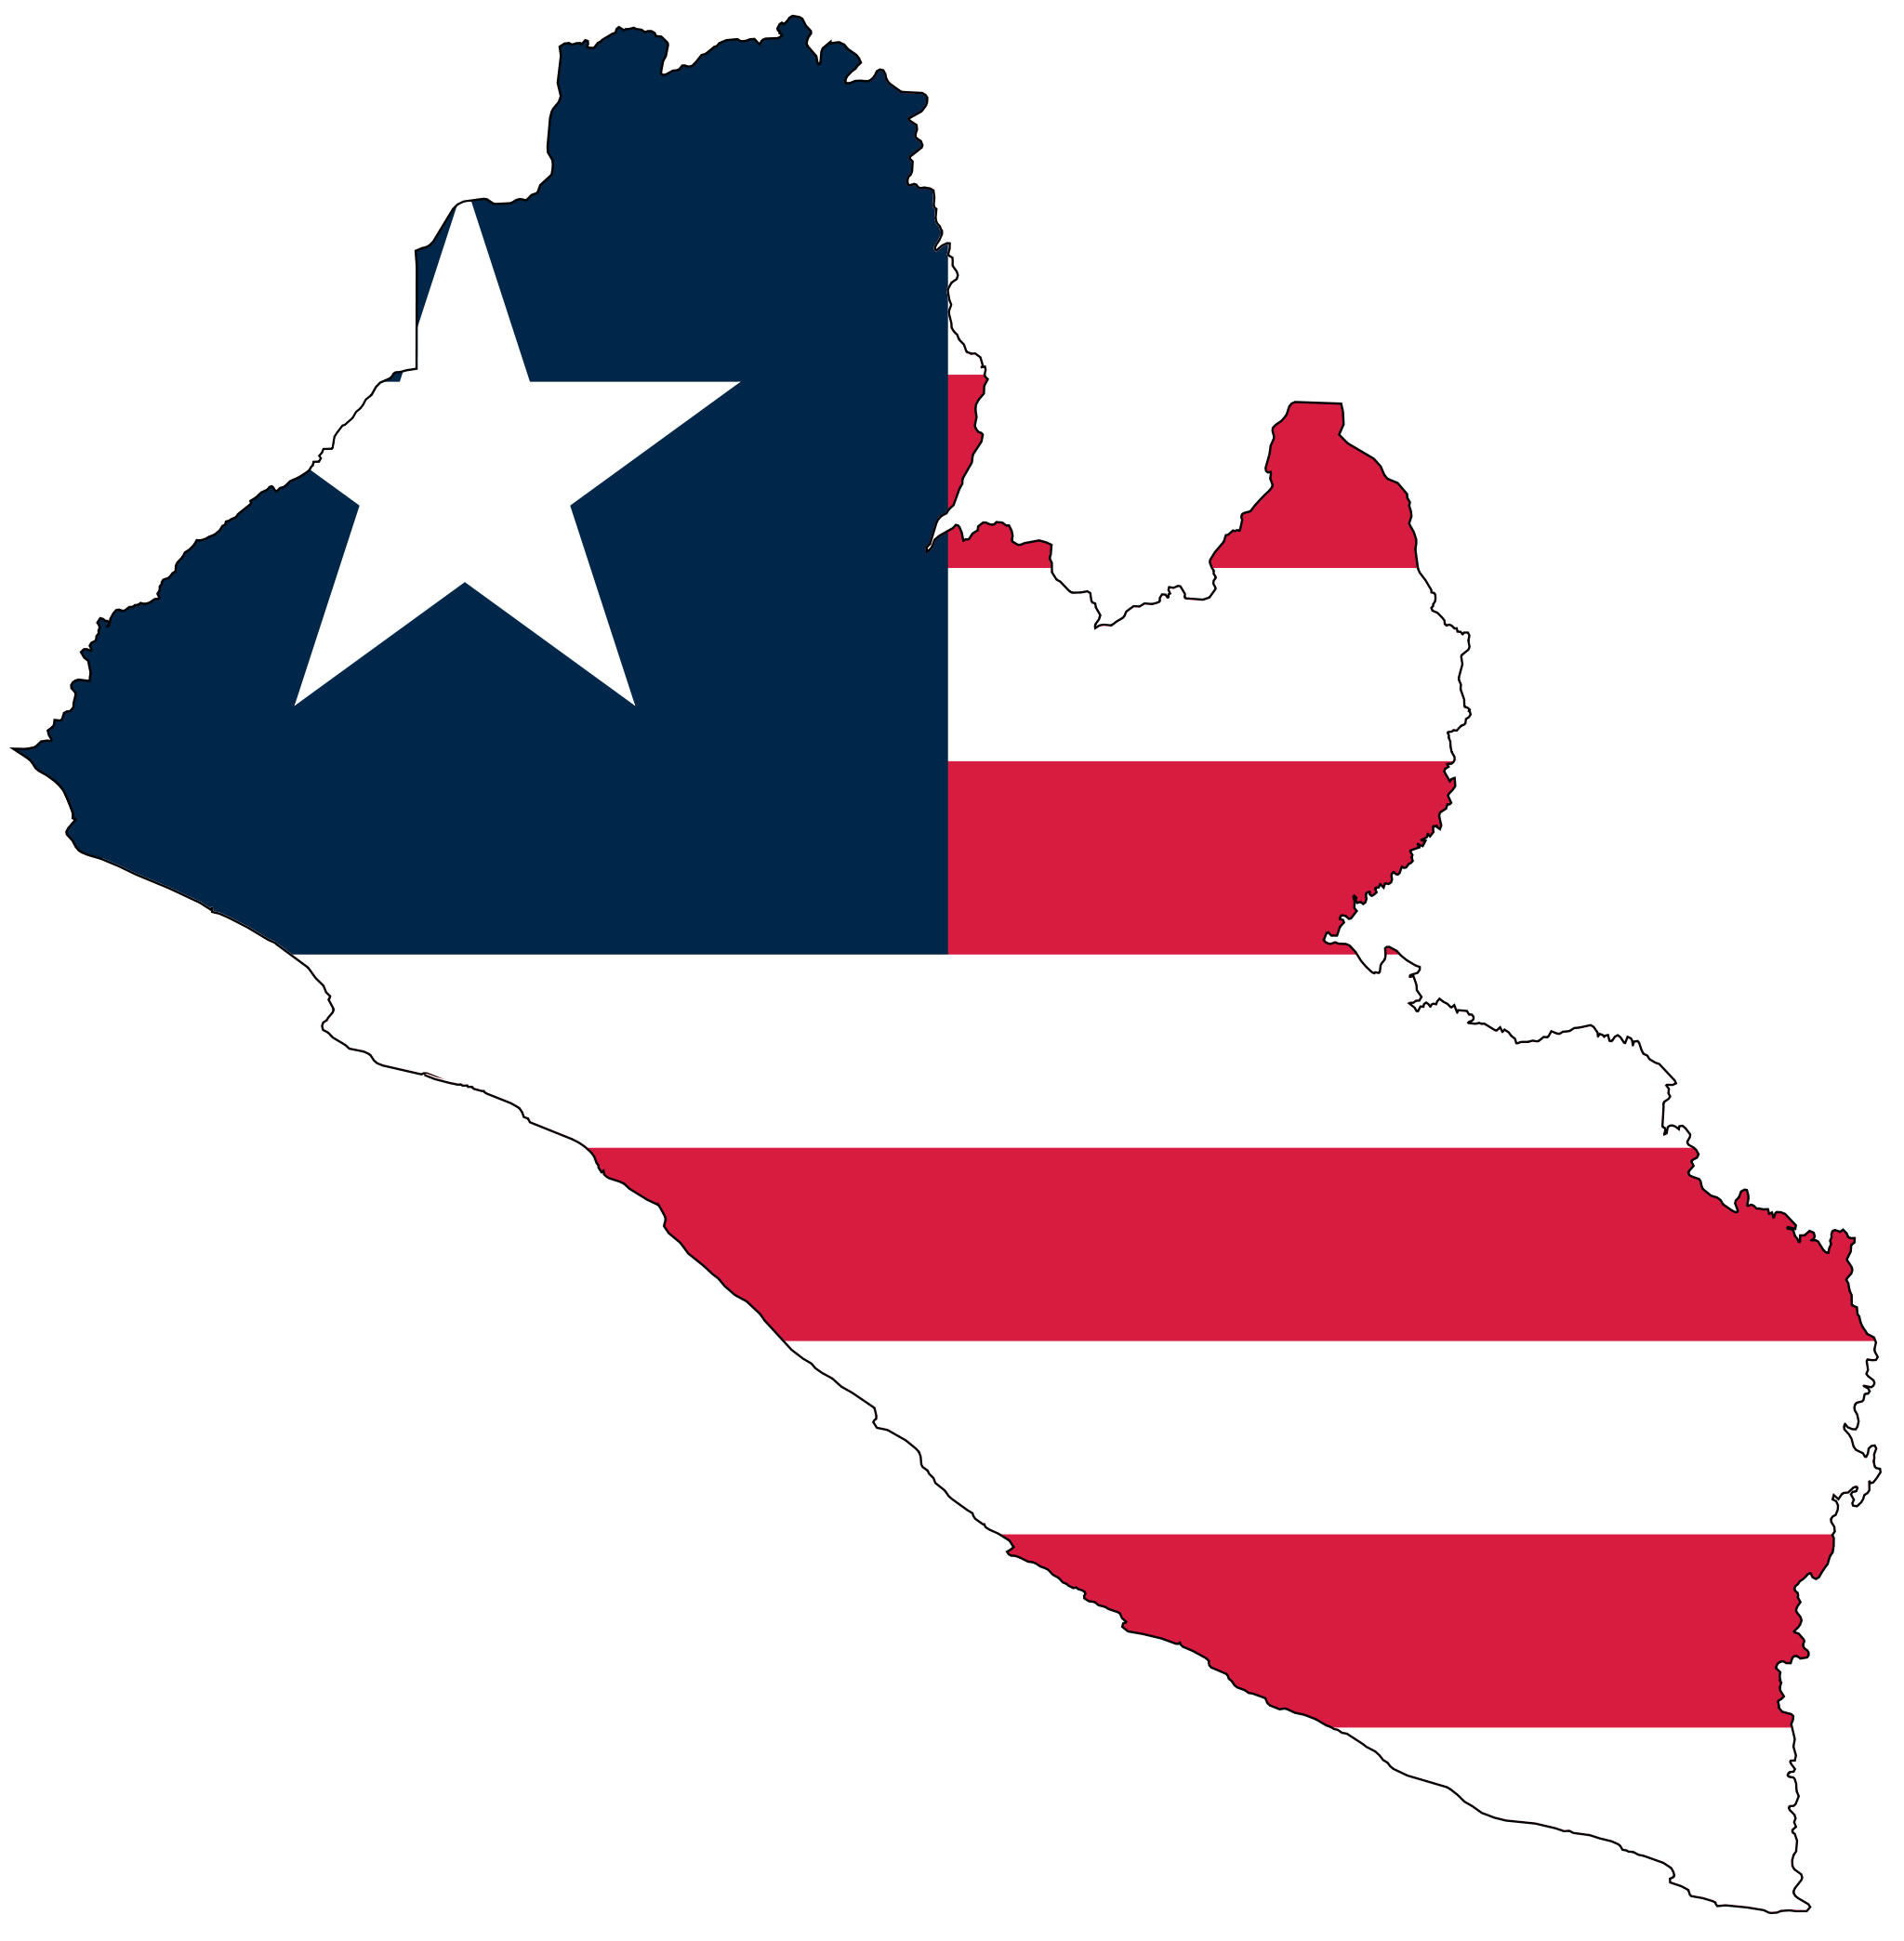 Résultat de recherche d'images pour "liberia carte et drapeau"